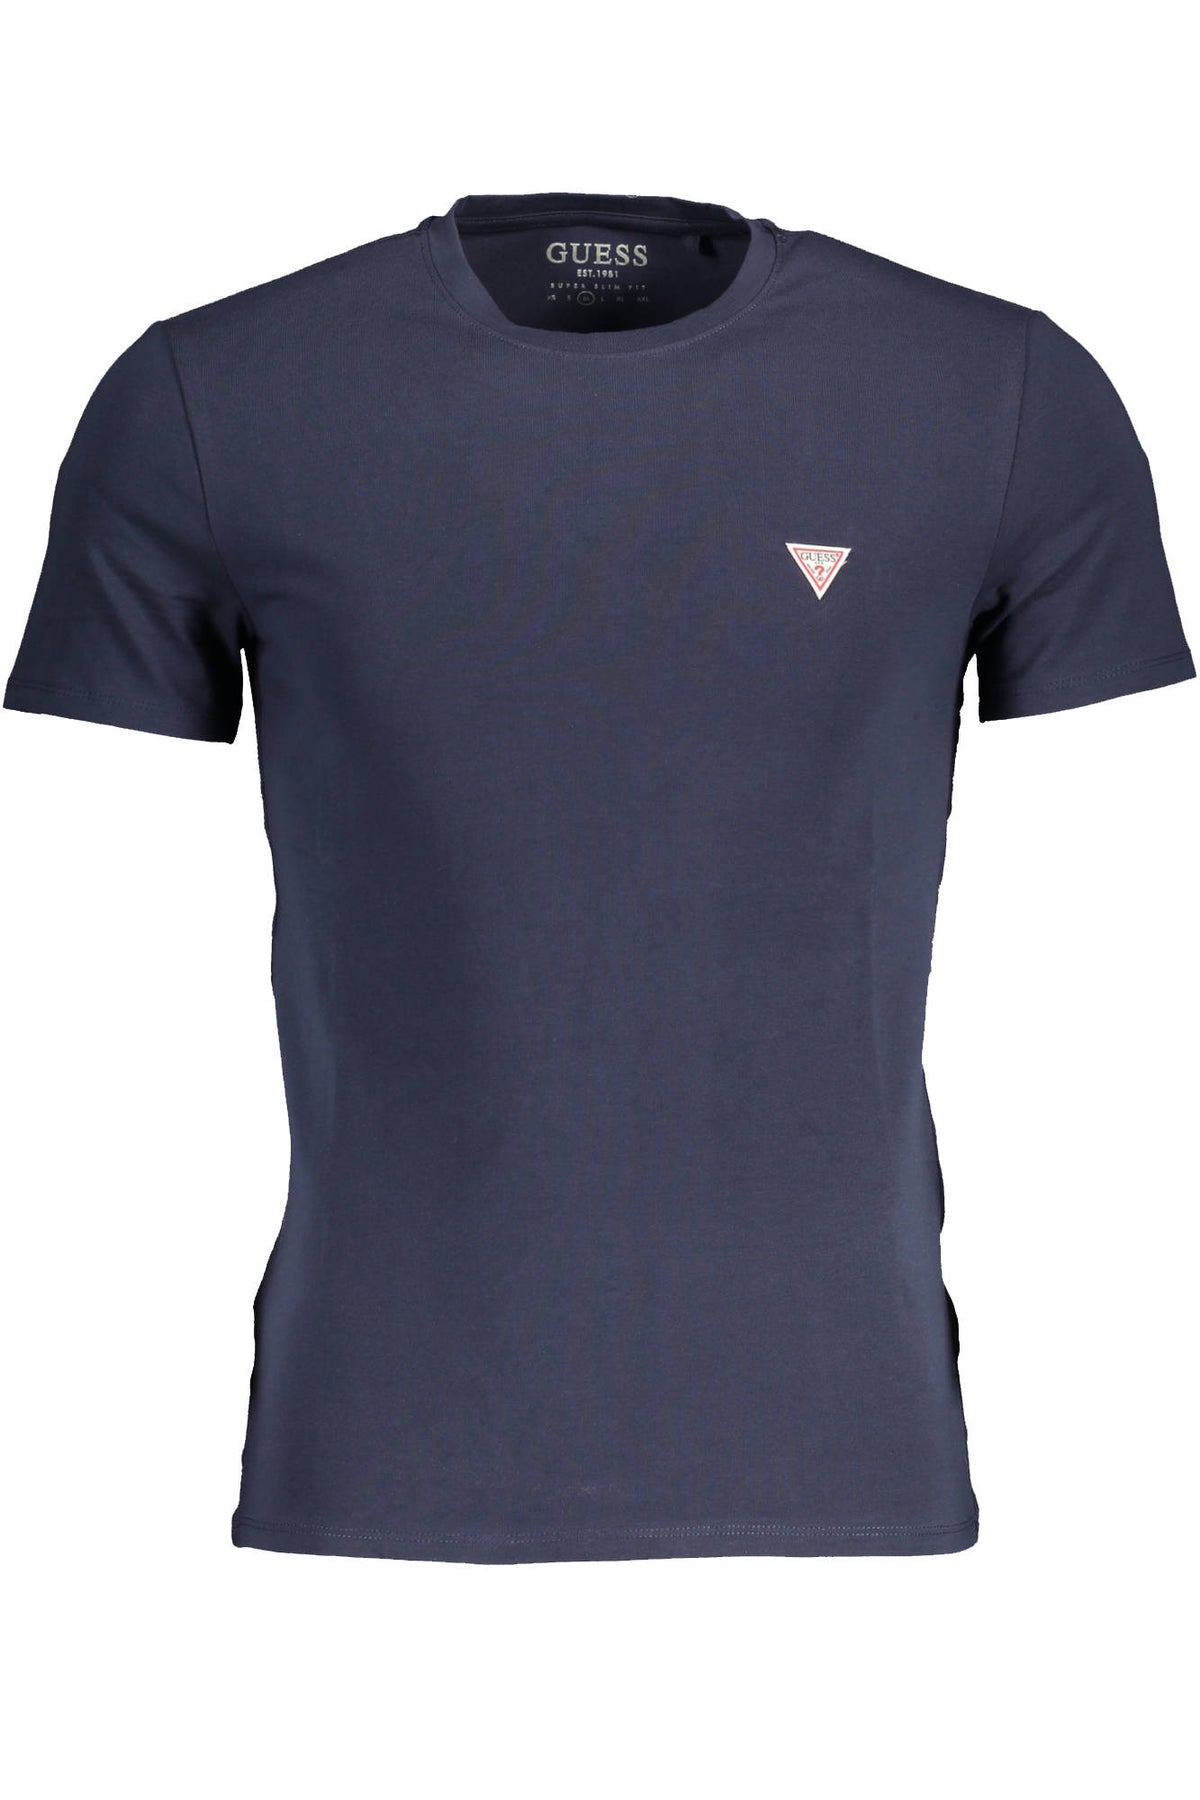 GUESS JEANS Herren T-Shirt Shirt Sweatshirt Oberteil mit Rundhalsausschnitt, kurzärmlig